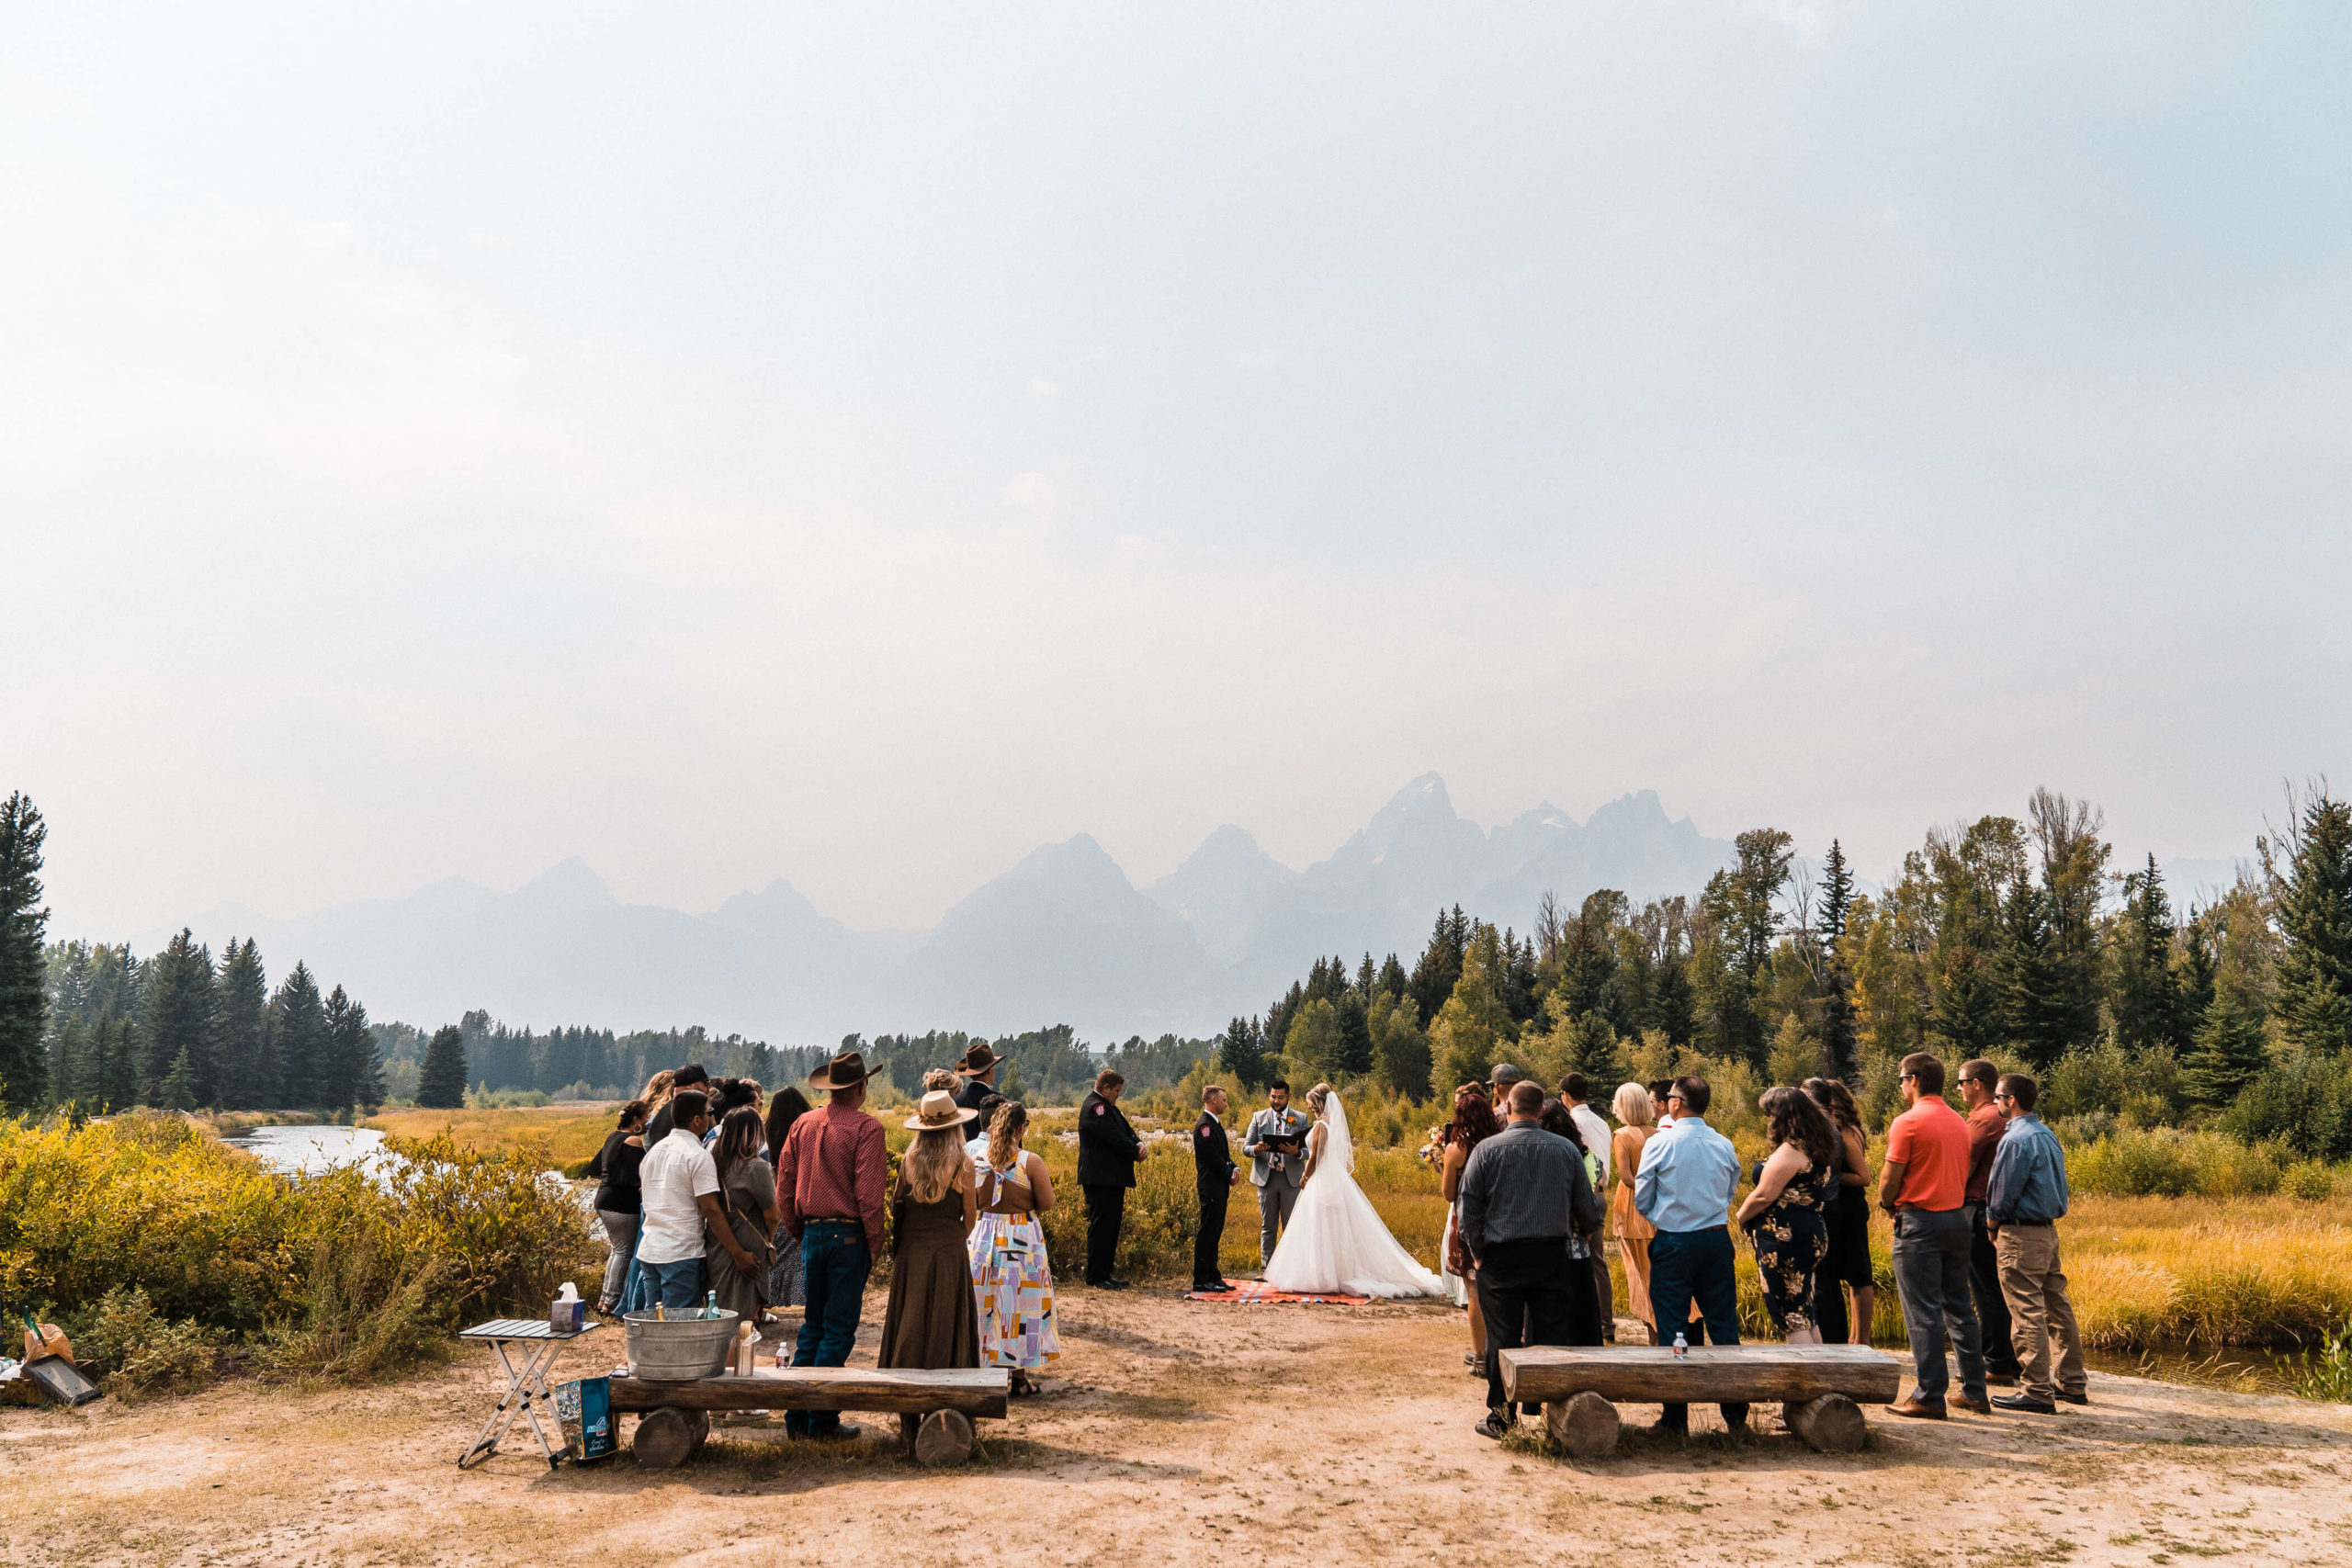 Small summer wedding at Grand Teton National Park